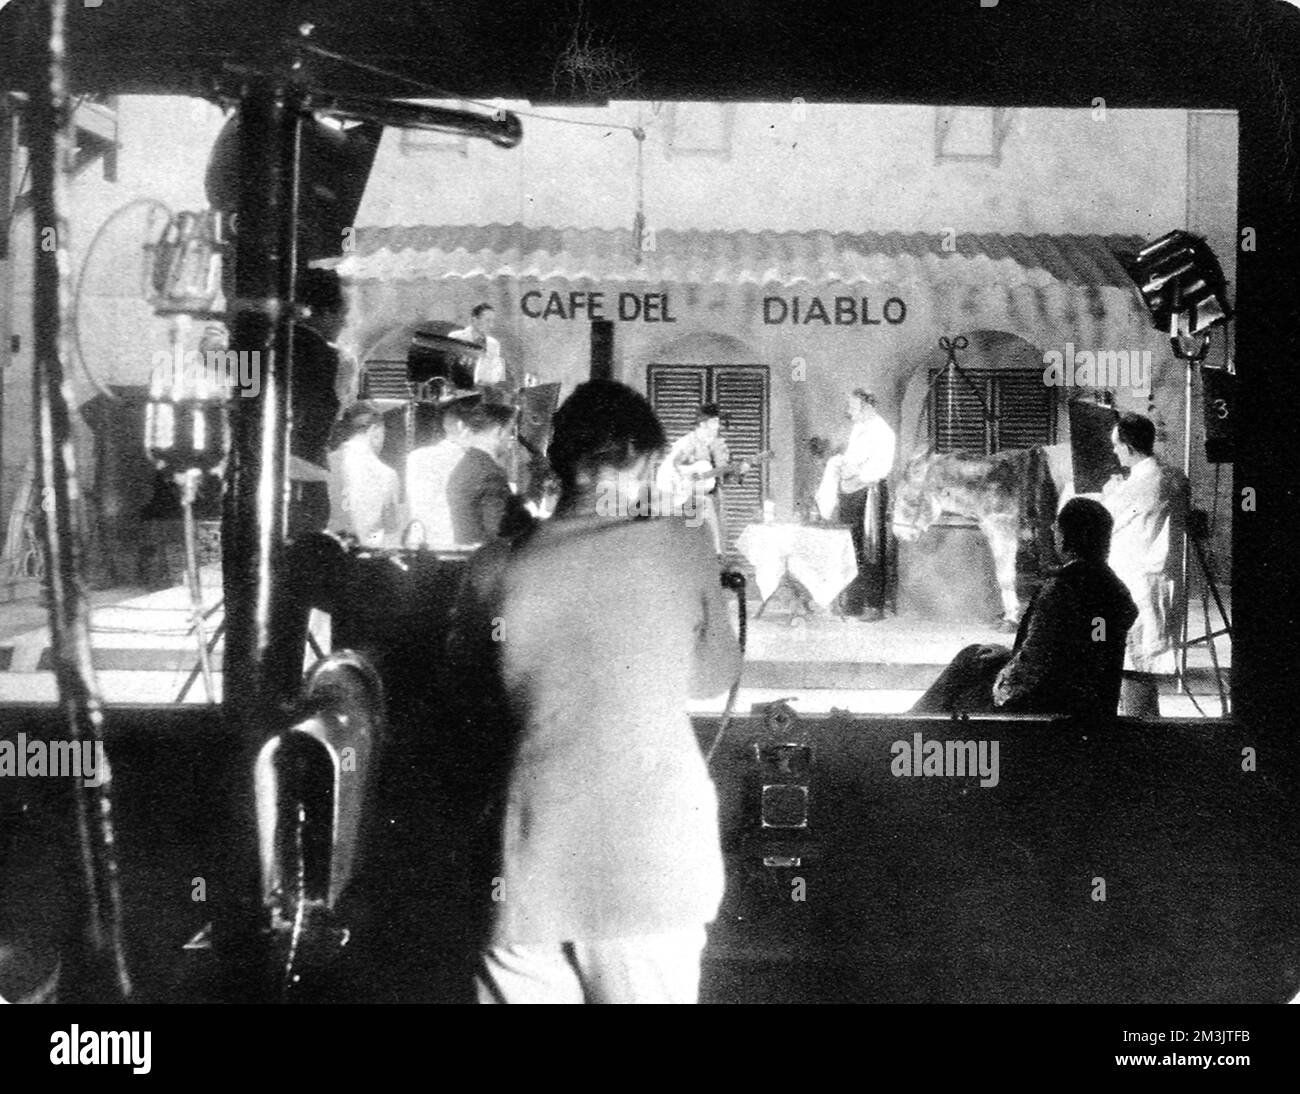 La télévision d'une scène espagnole au Crystal Palace, filmée sur film ciné dans les studios de la Baird Television Company. Le 2nd février 1935, le système Baird a transmis des scènes intérieures et extérieures à un public de Westminster. Les sujets de l'enregistrement comprenaient des scènes de films de saut à cheval et de course. Date: 1935 Banque D'Images